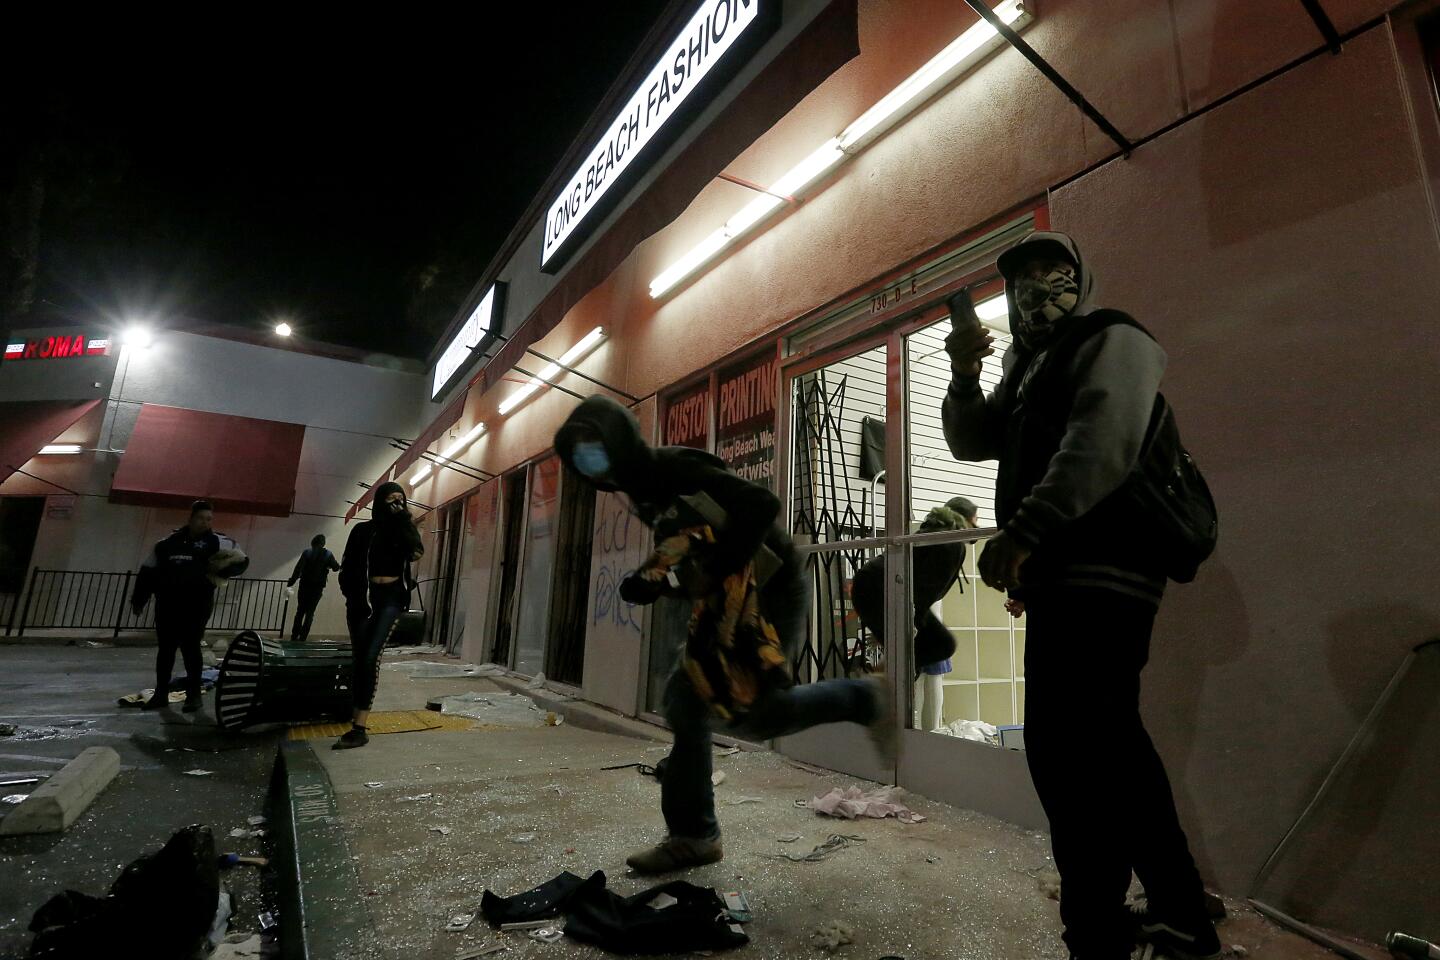 Looting in Long Beach